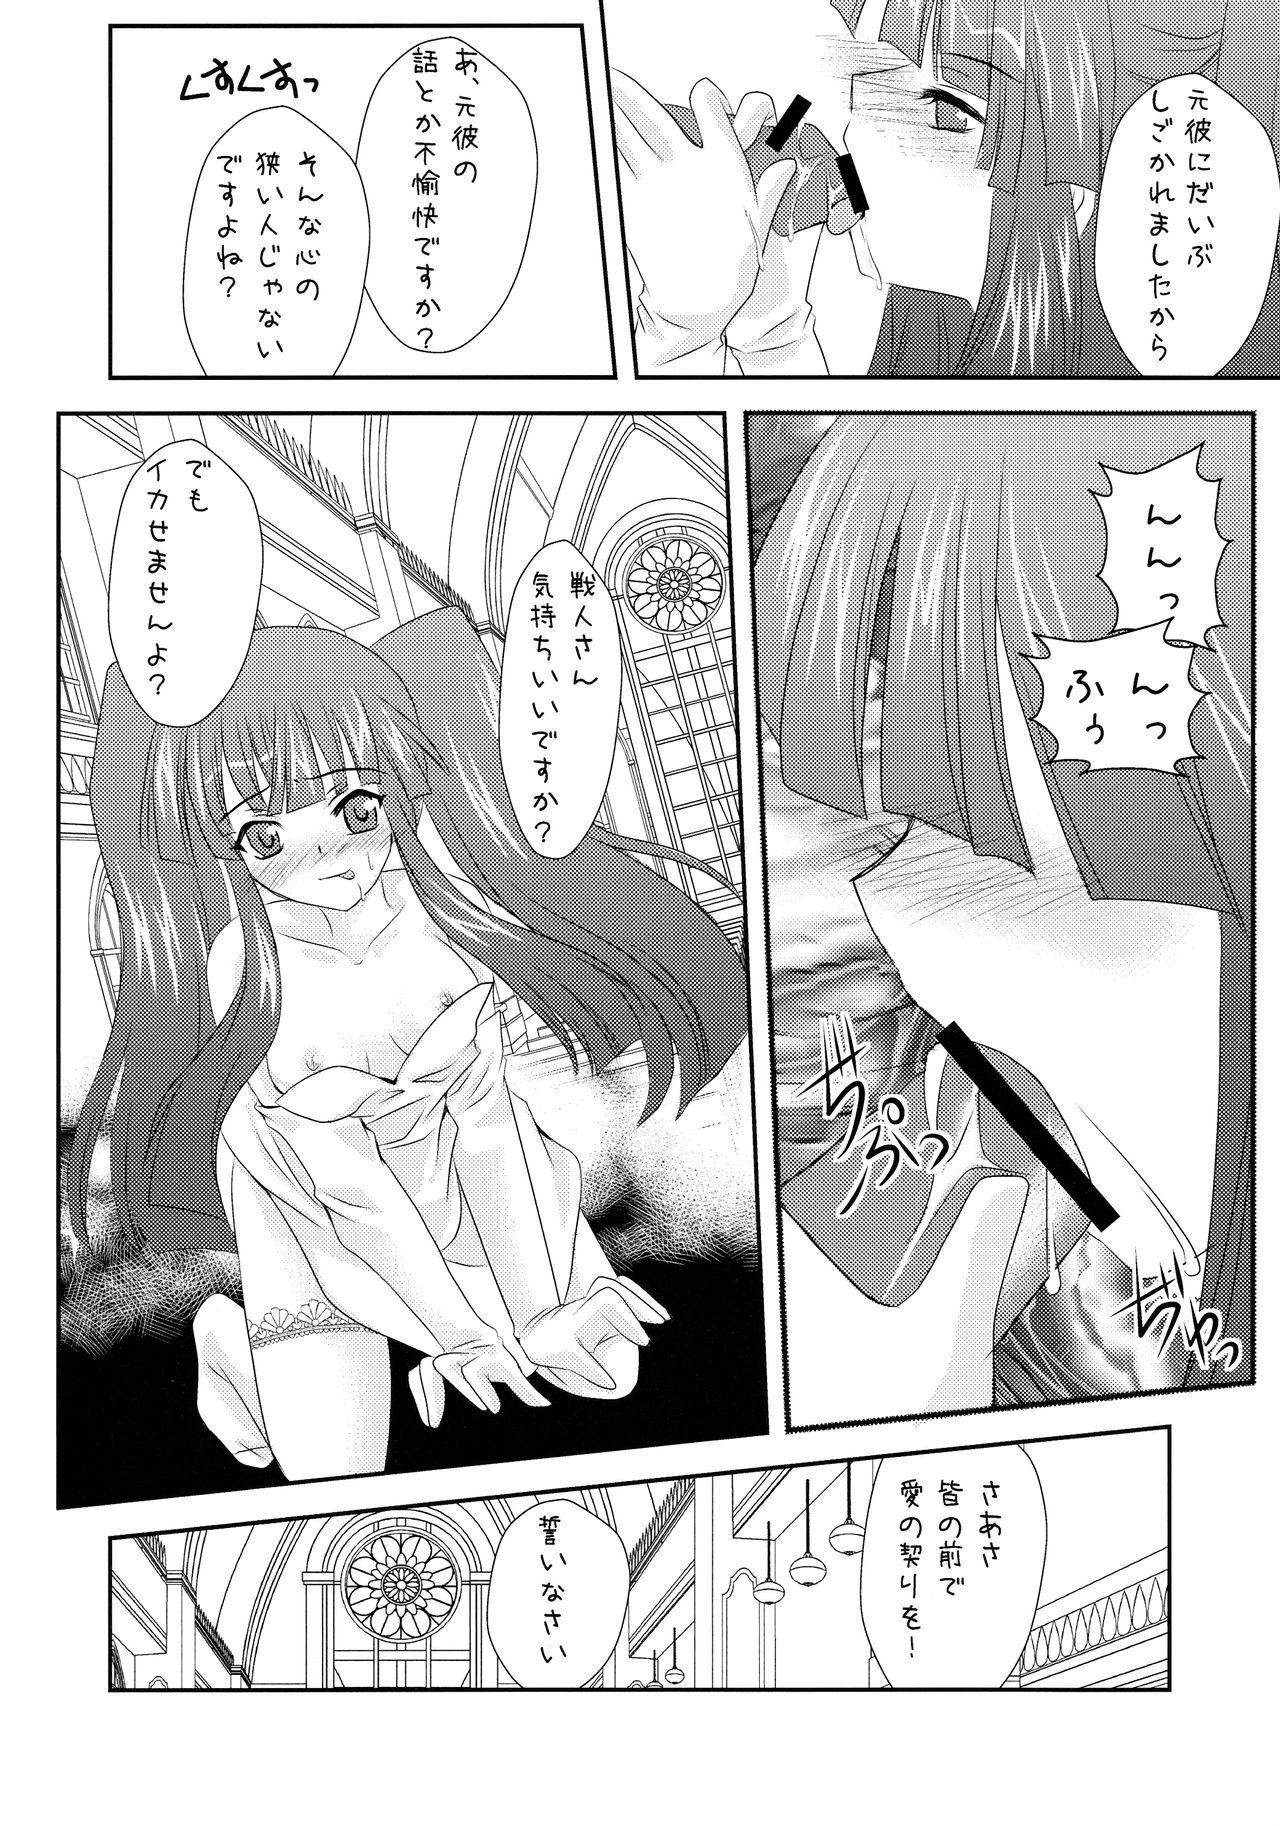 Corno Ushiromiya Bride - Umineko no naku koro ni Amatoriale - Page 8